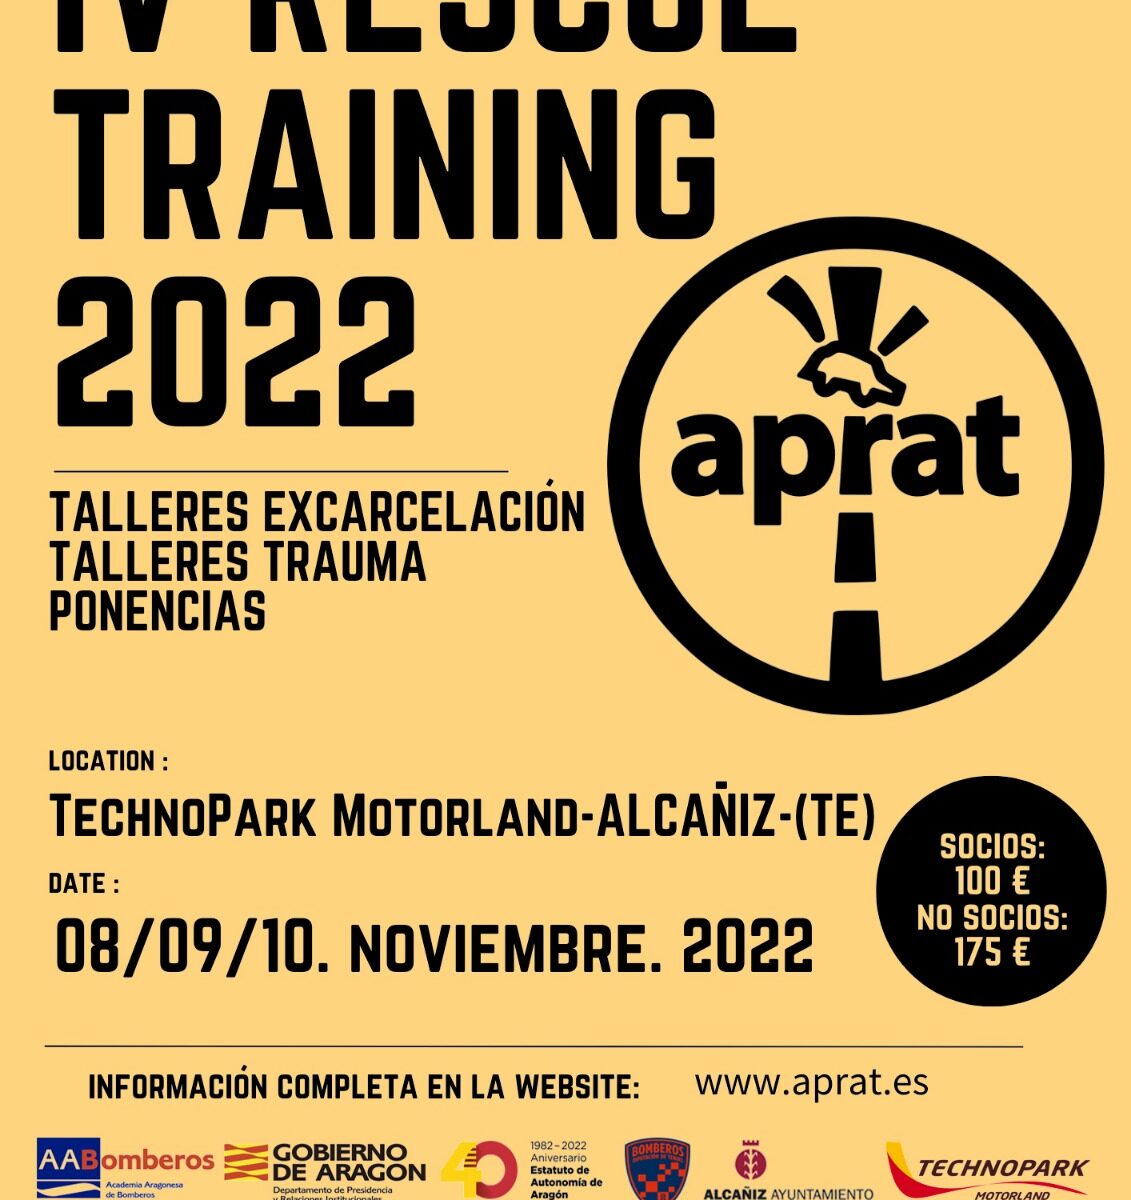 Aprat Rescue Training 2022